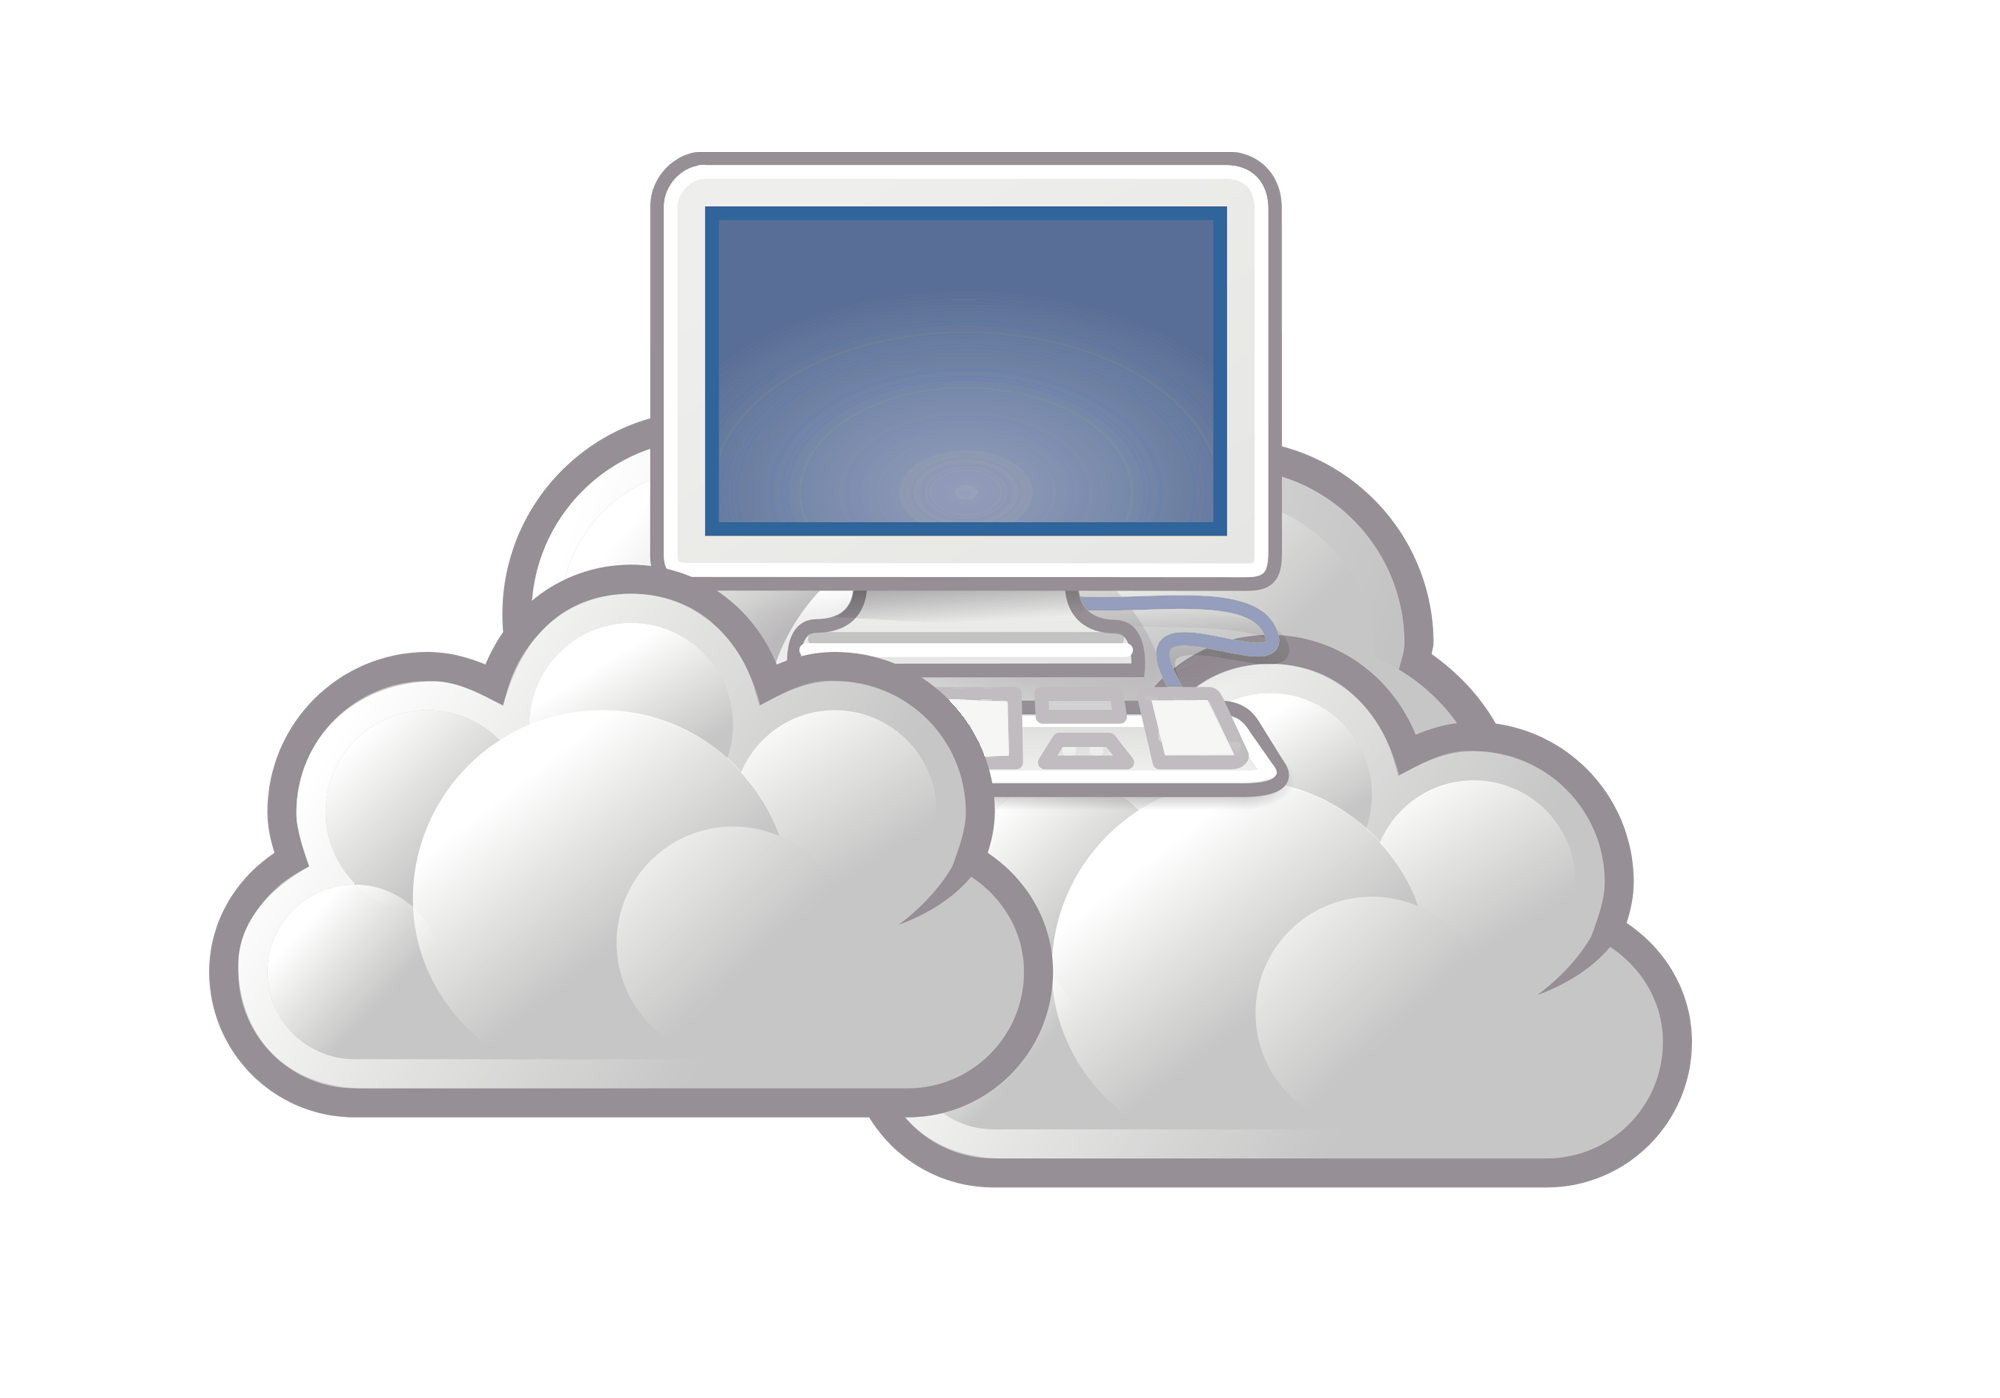 Www cloud. Облако компьютер. Картинки связанные с облачными технологиями. Облачный ПК на андроид. Облачное хранилище на несколько устройств.